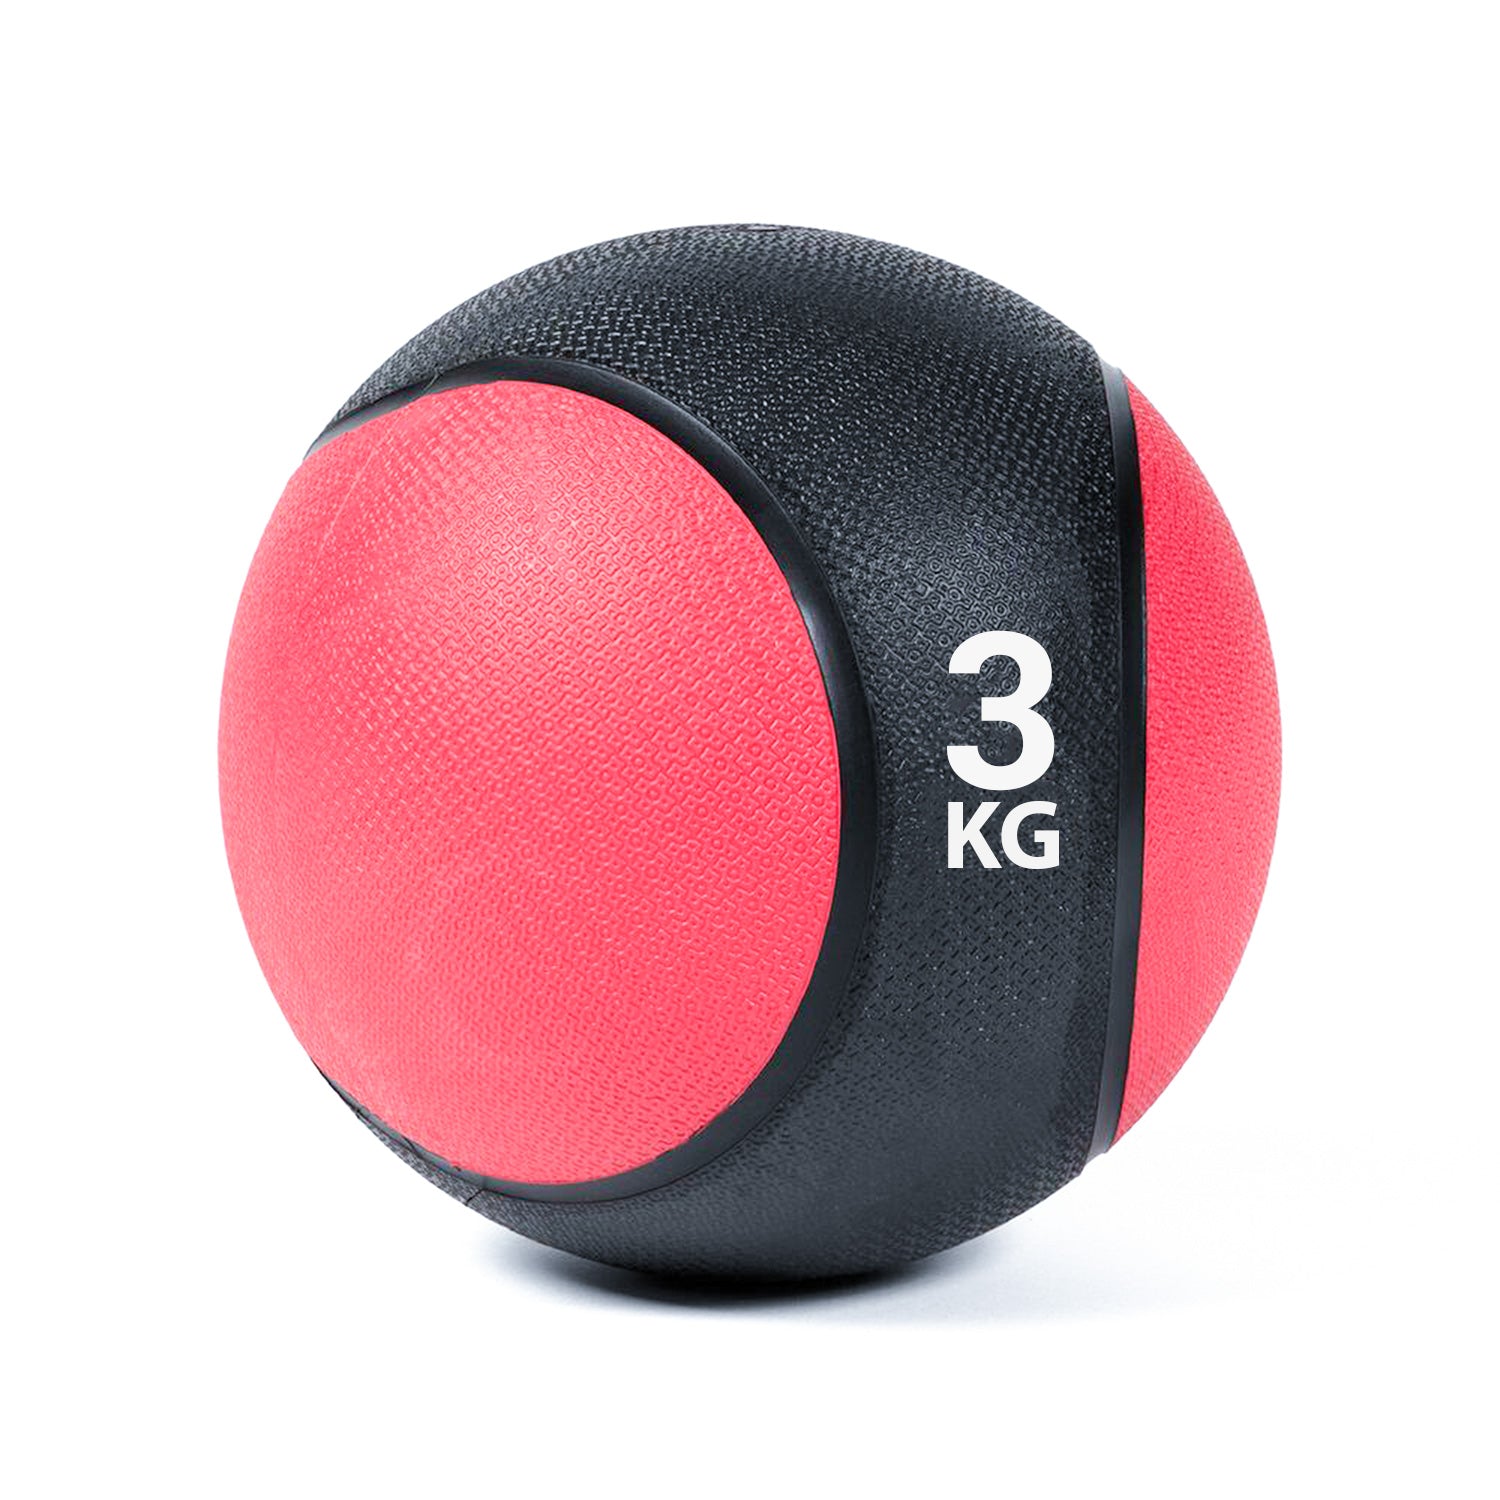 كرة طبية من المطاط لاعادة التأهيل و اللياقة البدنية - لون اسود و احمر - وزن 3 كيلو جرام - Kanteen - كانتين